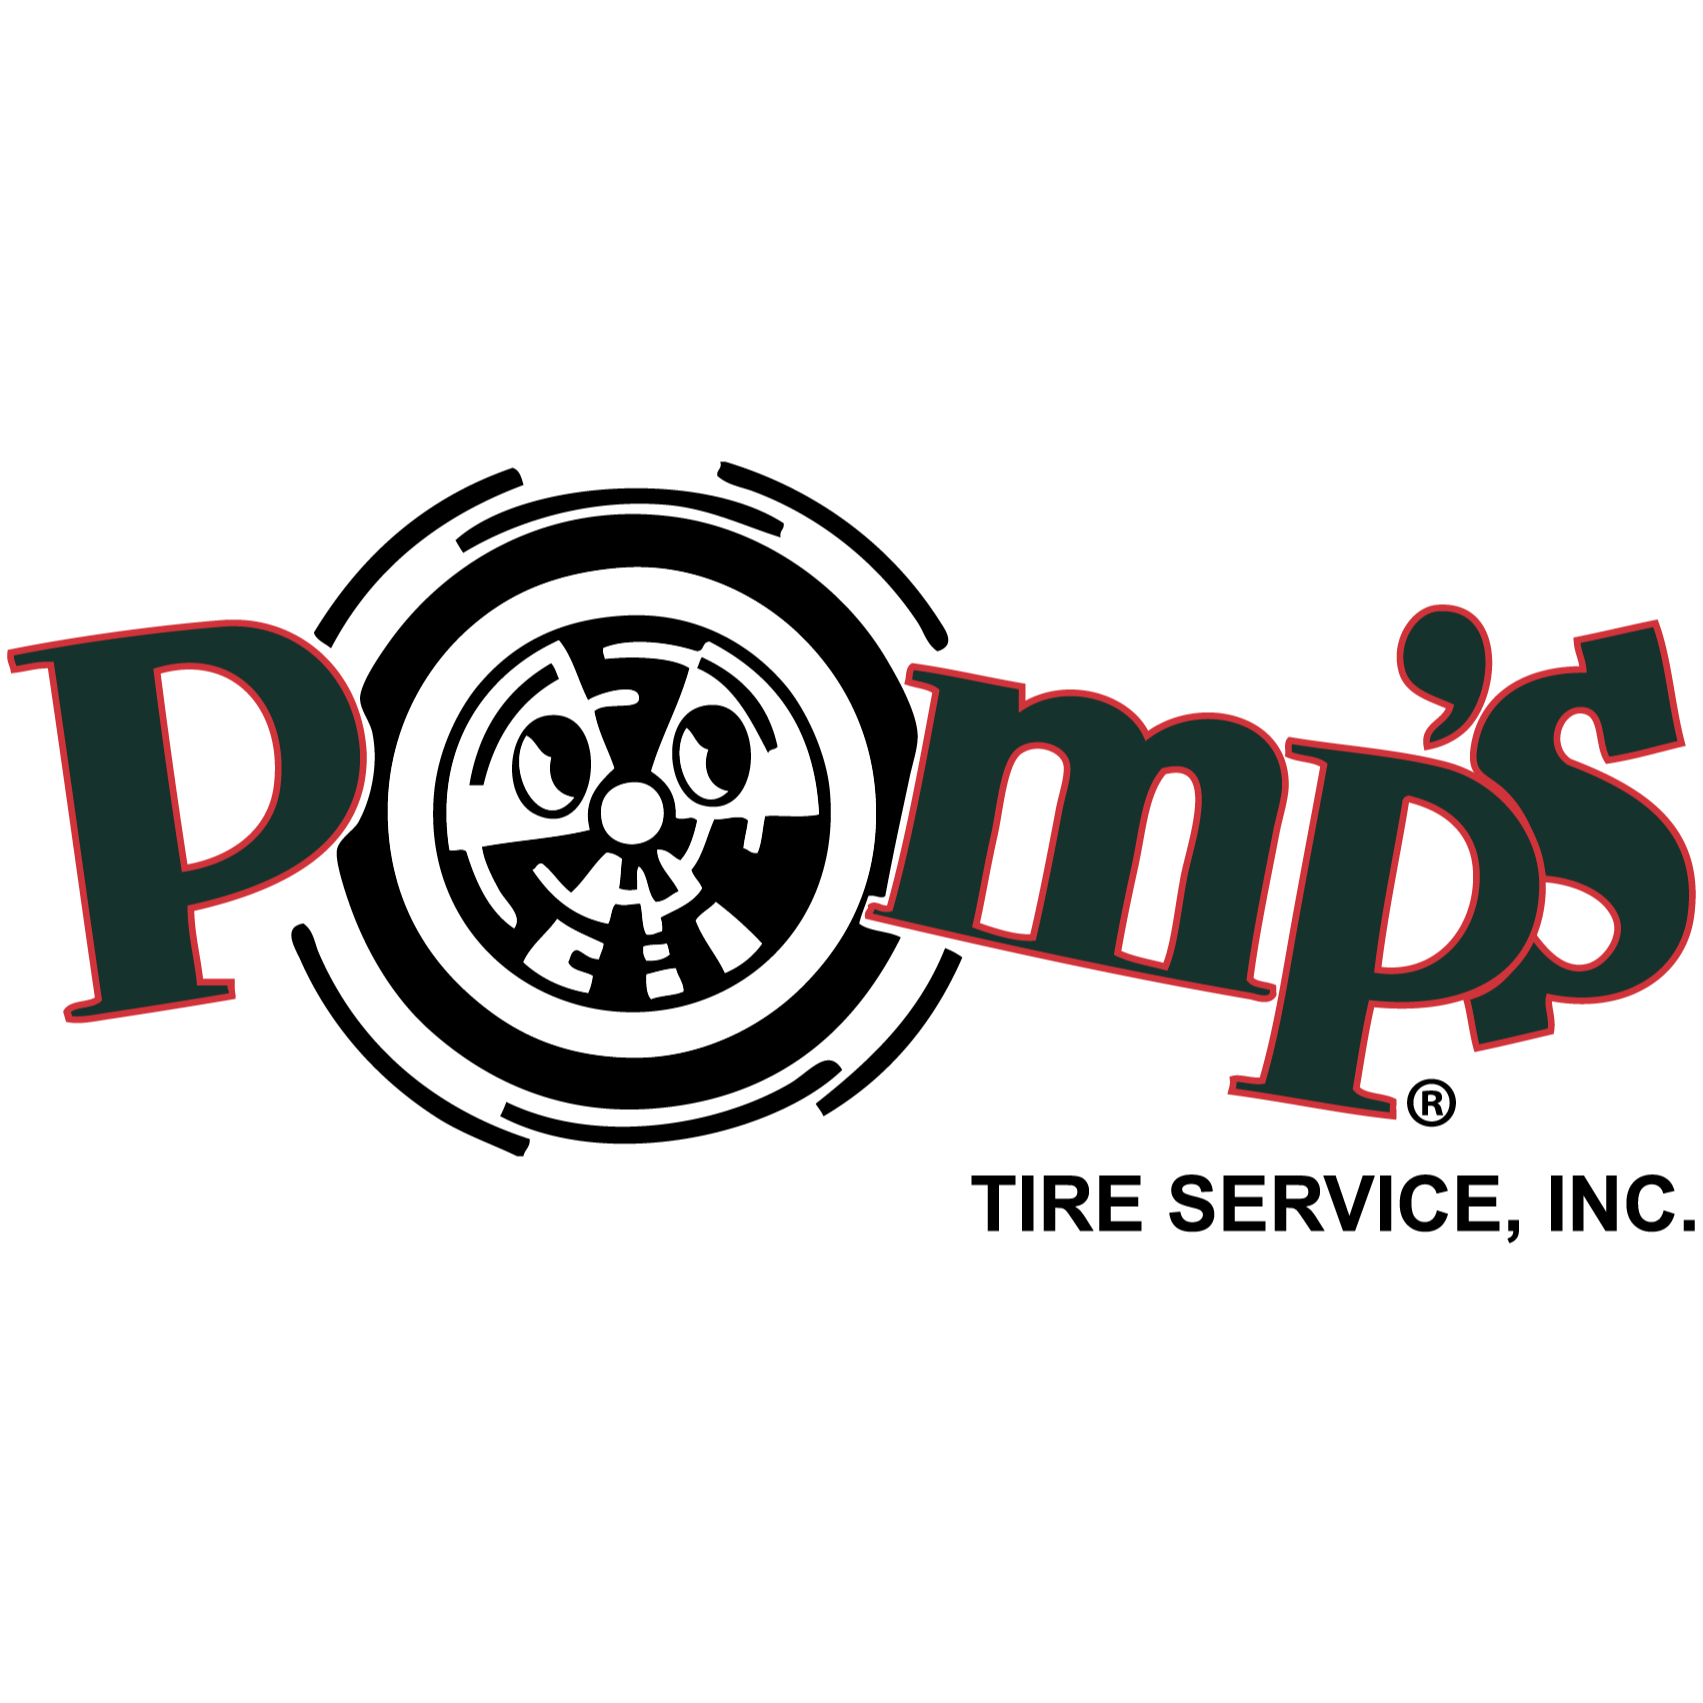 Pomp's Tire Service - Springfield, IL 62703 - (217)525-1395 | ShowMeLocal.com